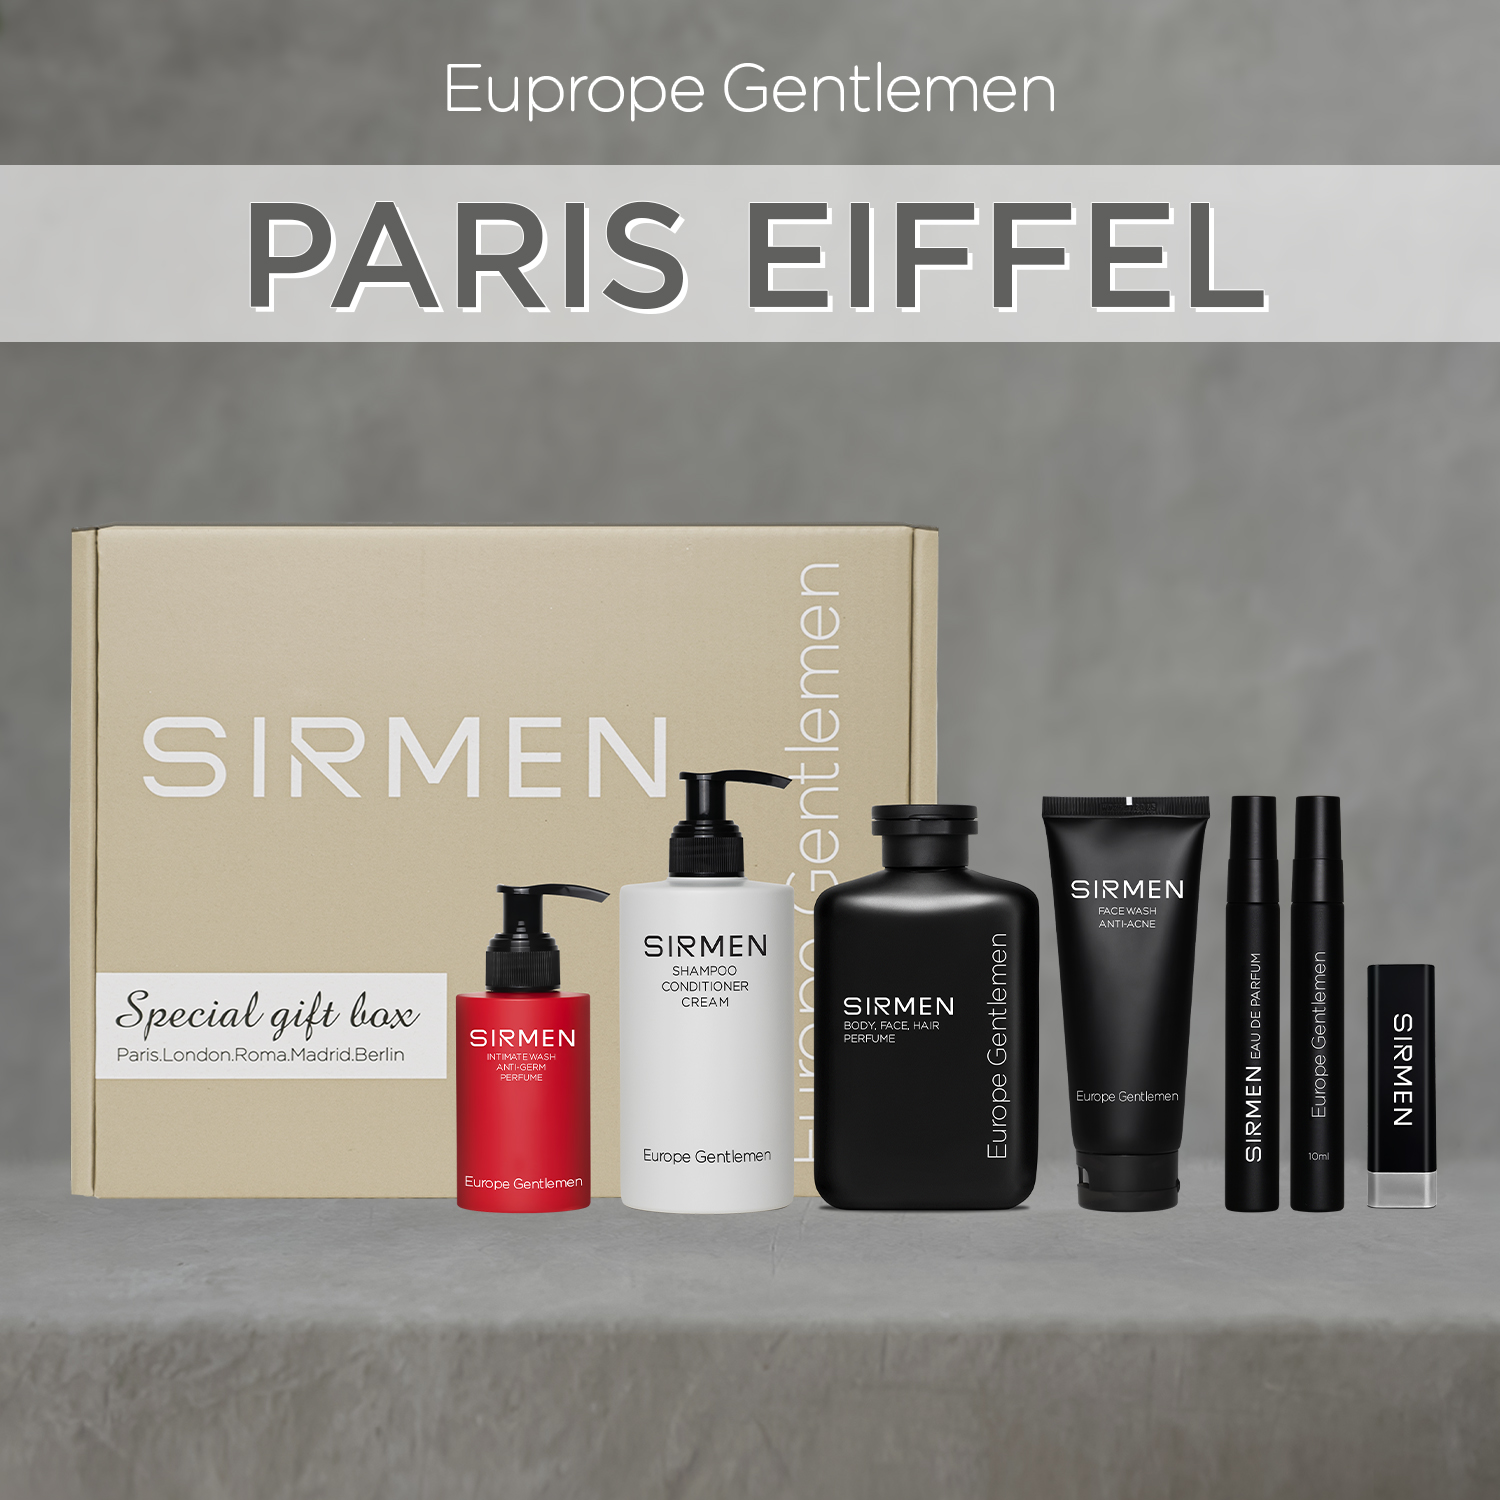 Gift box 6 Paris Eiffel Nước hoa nam - Sữa tắm - Dầu gội xả dưỡng - Dung dịch vệ sinh - Sữa rửa mặt - Son Dưỡng SIRMEN